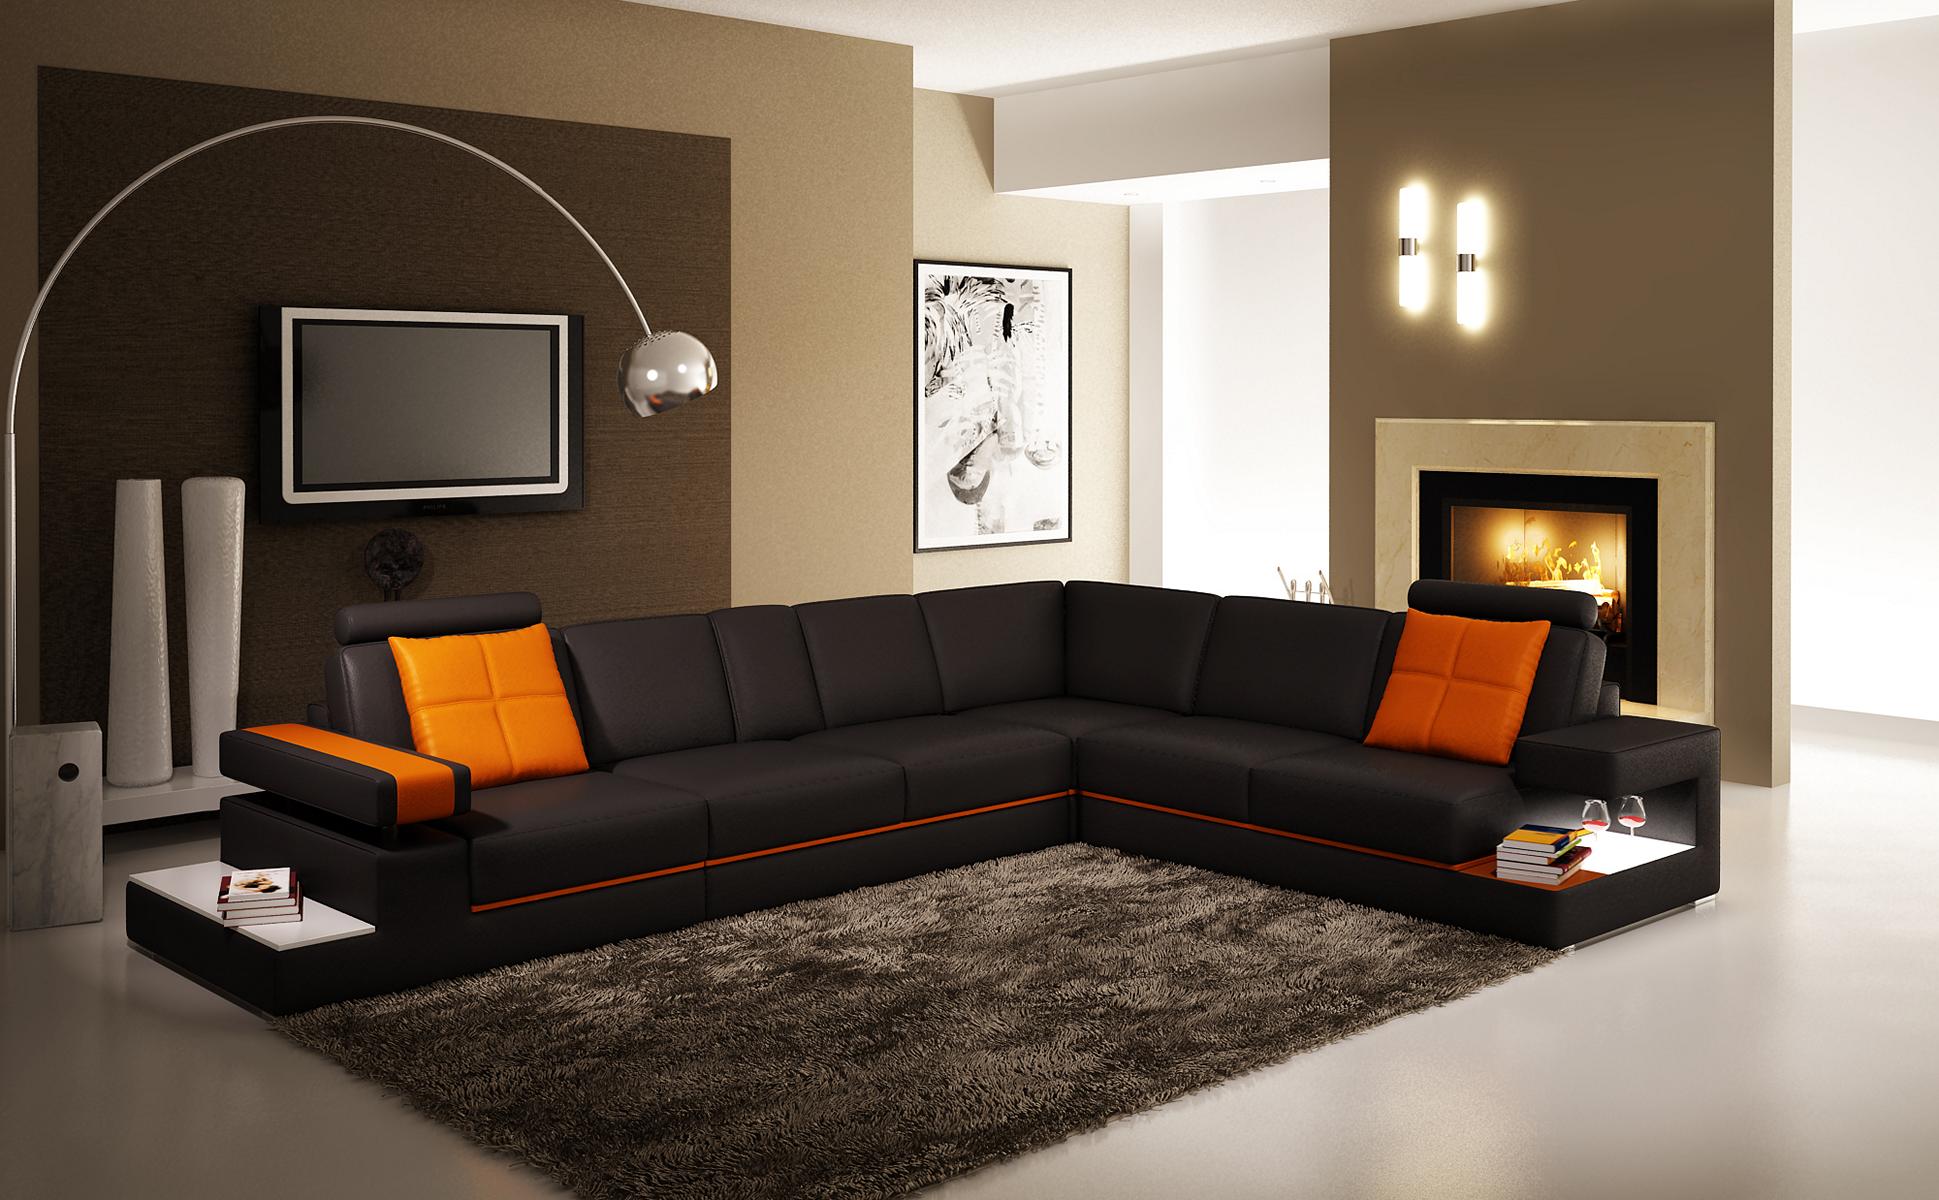 Moderne Wohnzimmer Ecksofa Couch Ledersofa mit Beleuchtung So
fa Couchen